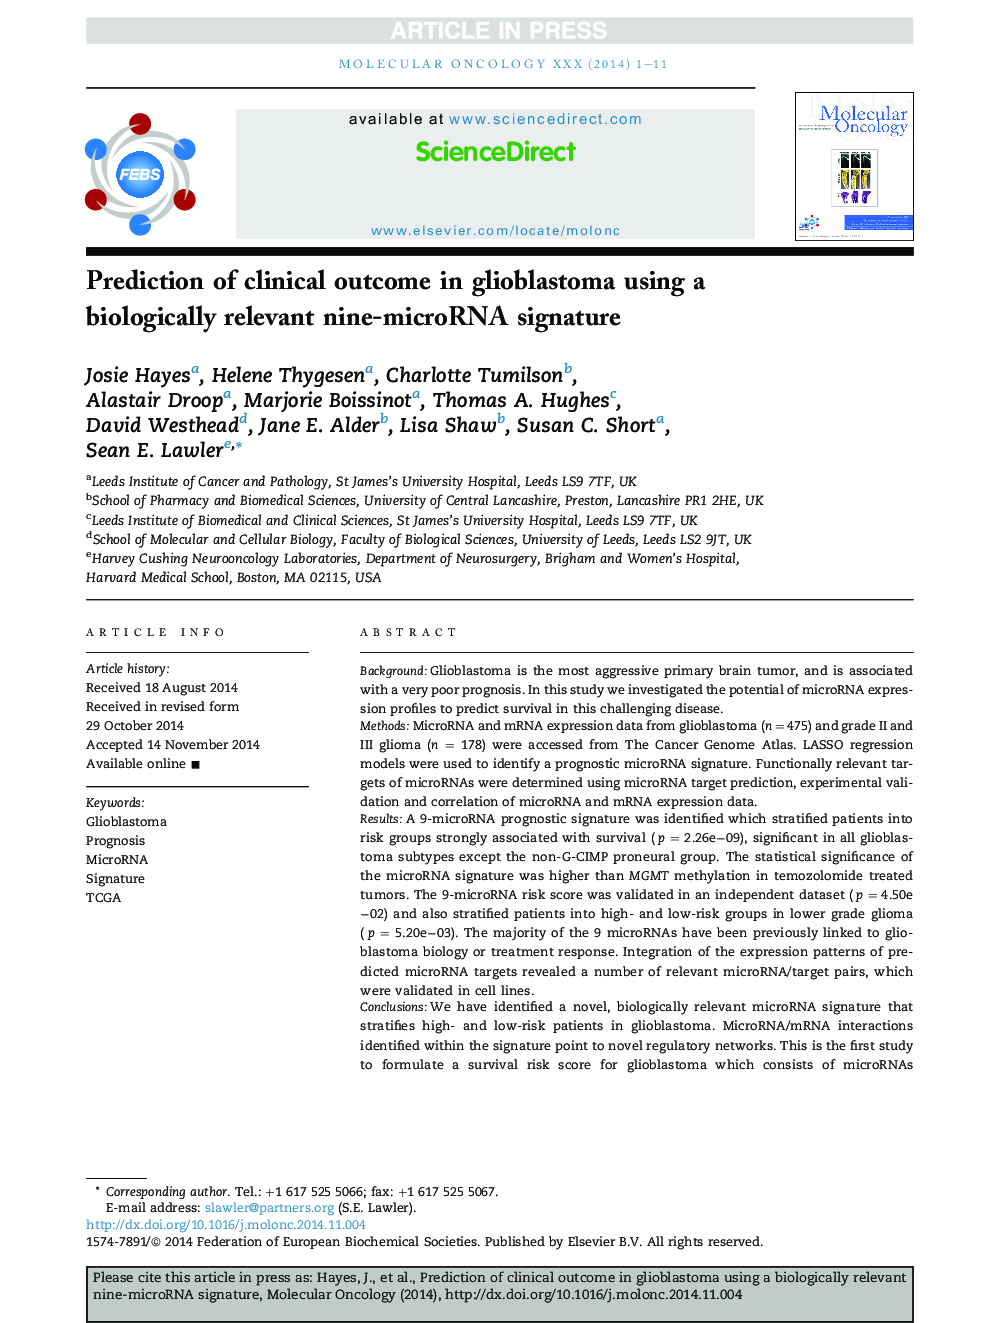 Prediction of clinical outcome in glioblastoma using a biologically relevant nine-microRNA signature